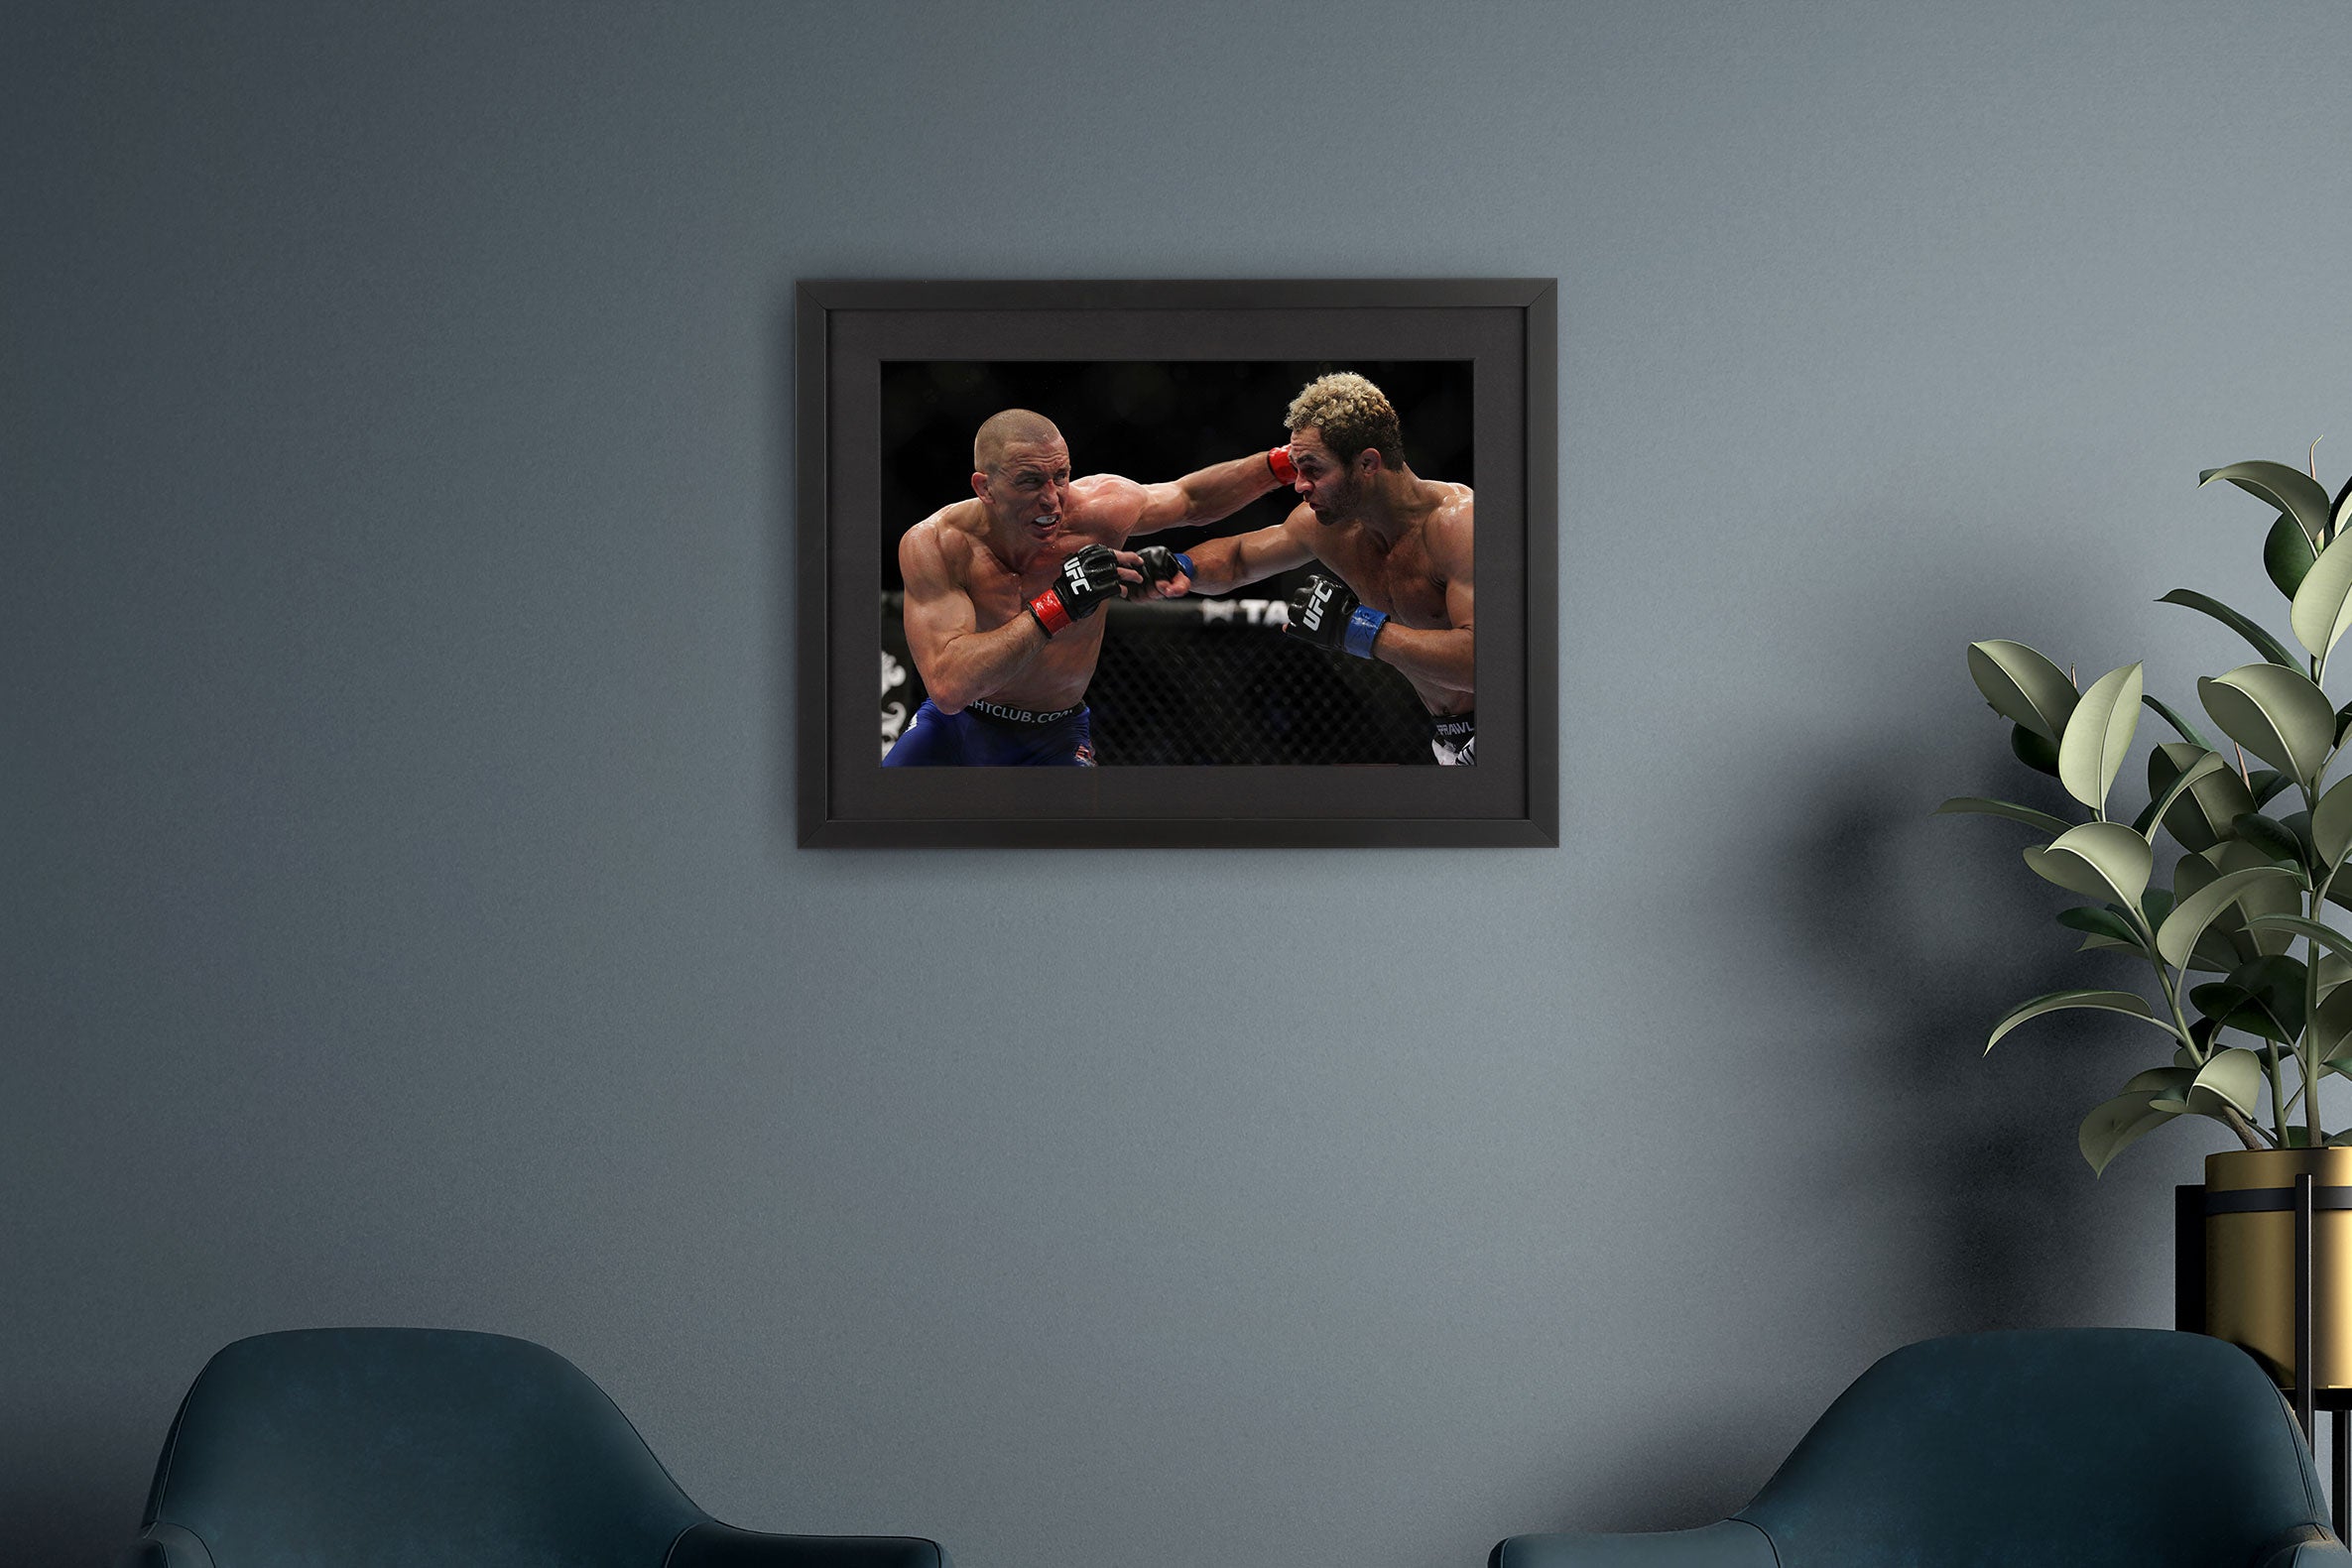 George St-Pierre Framed Photo – UFC 124: St-Pierre vs Koscheck